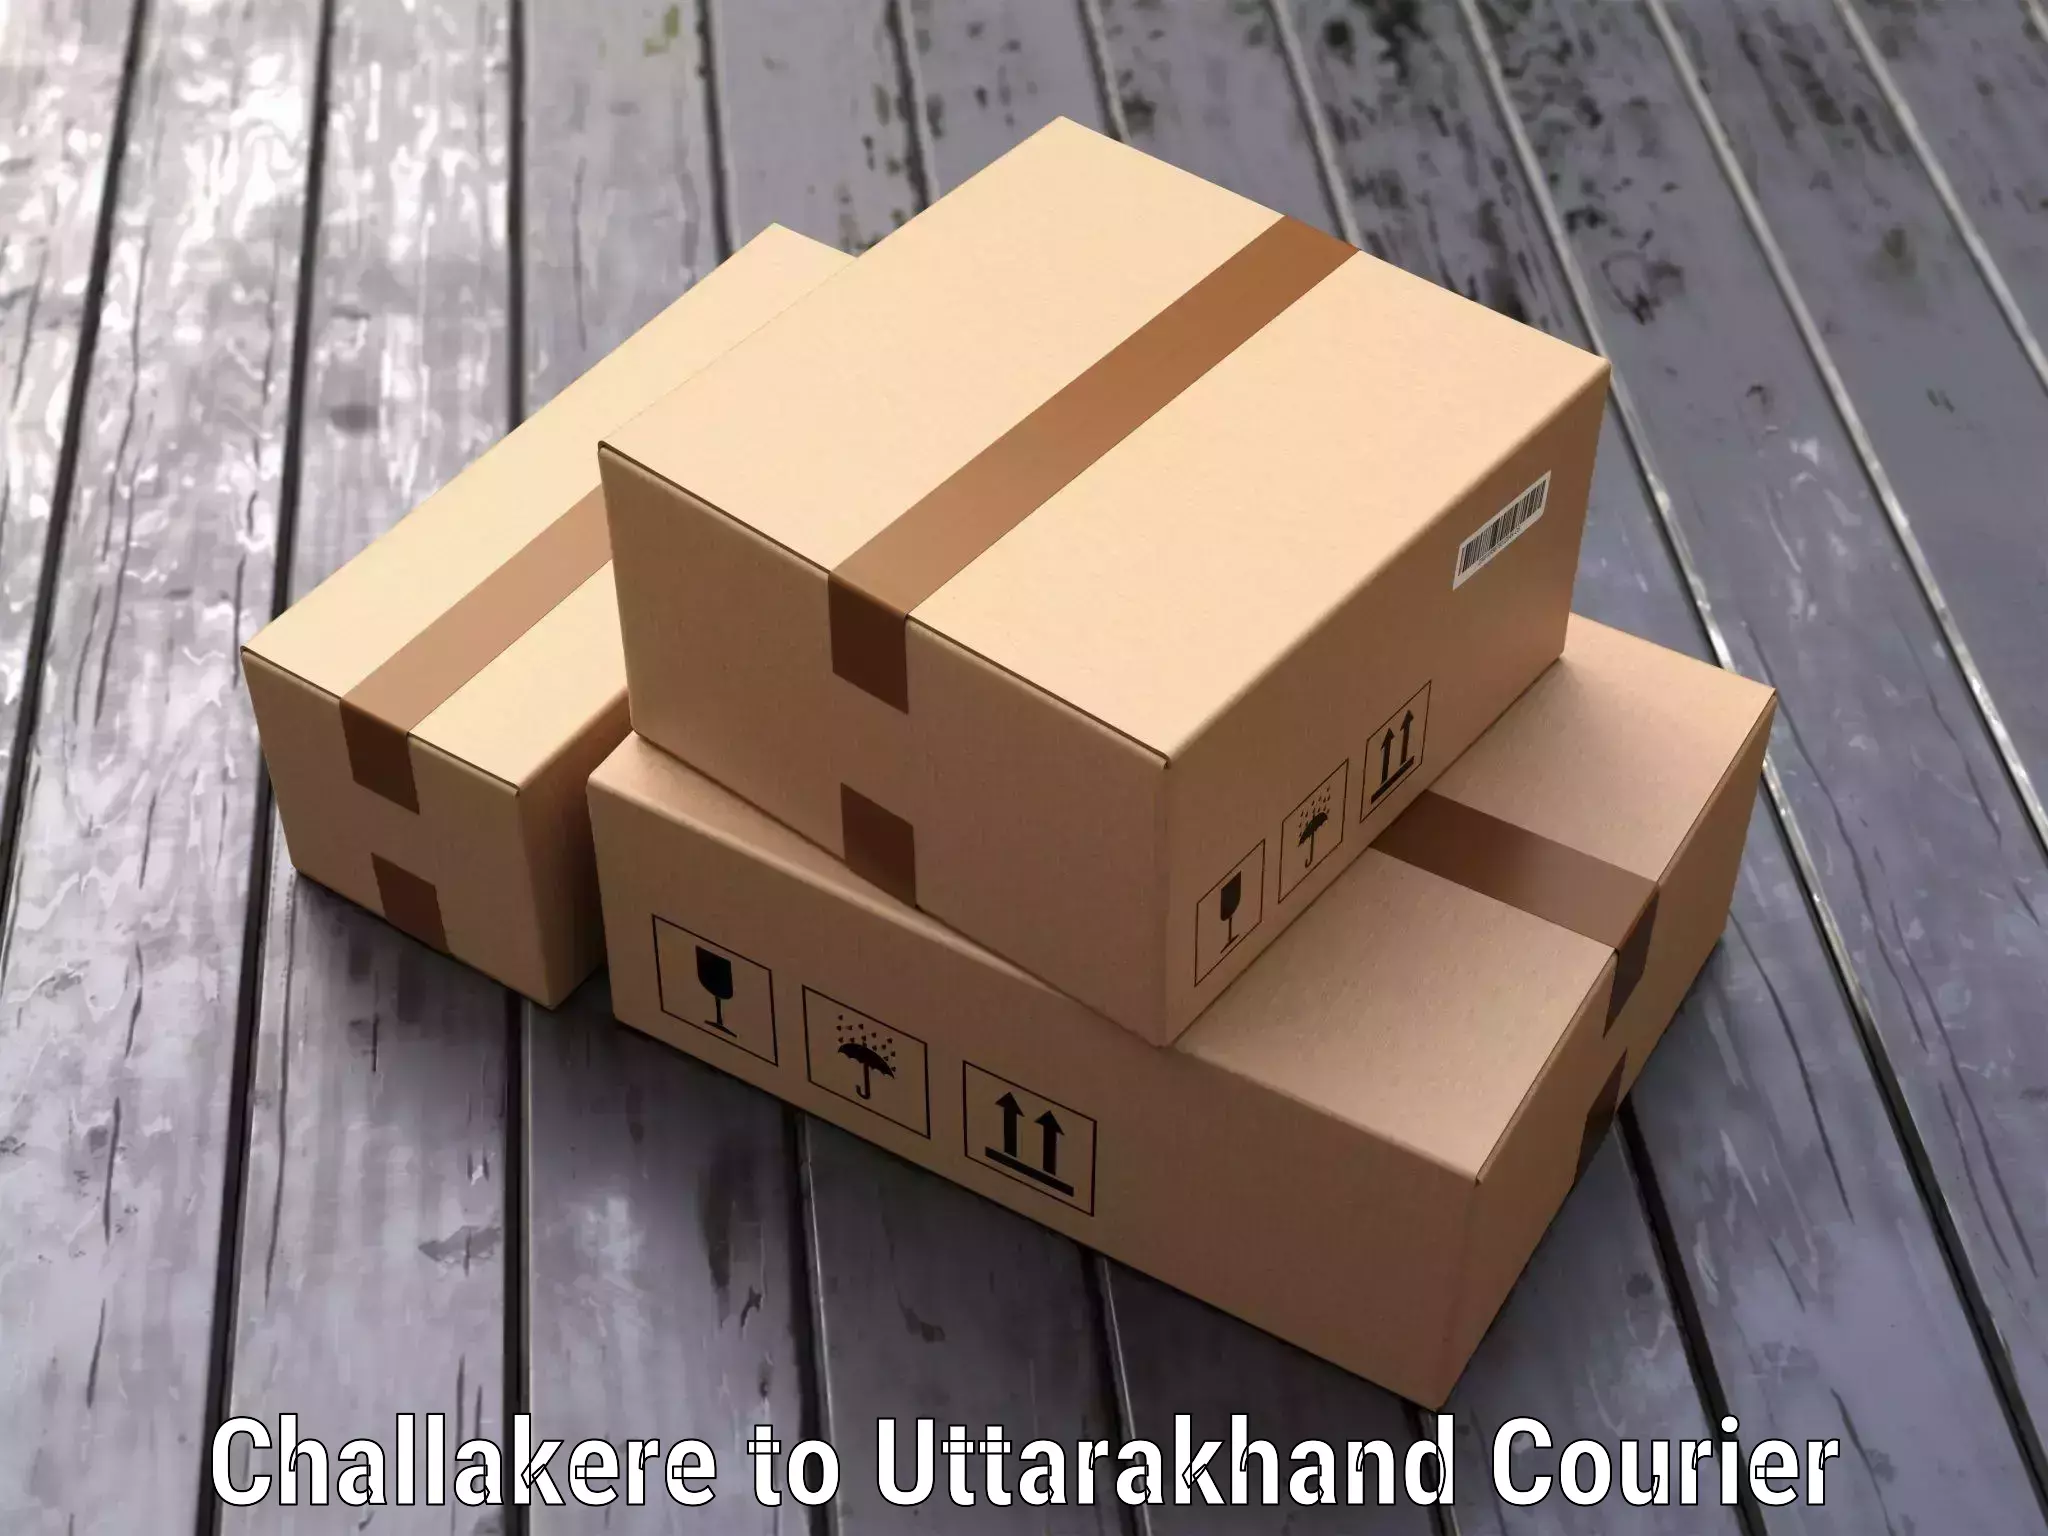 Luggage transport company Challakere to Uttarakhand